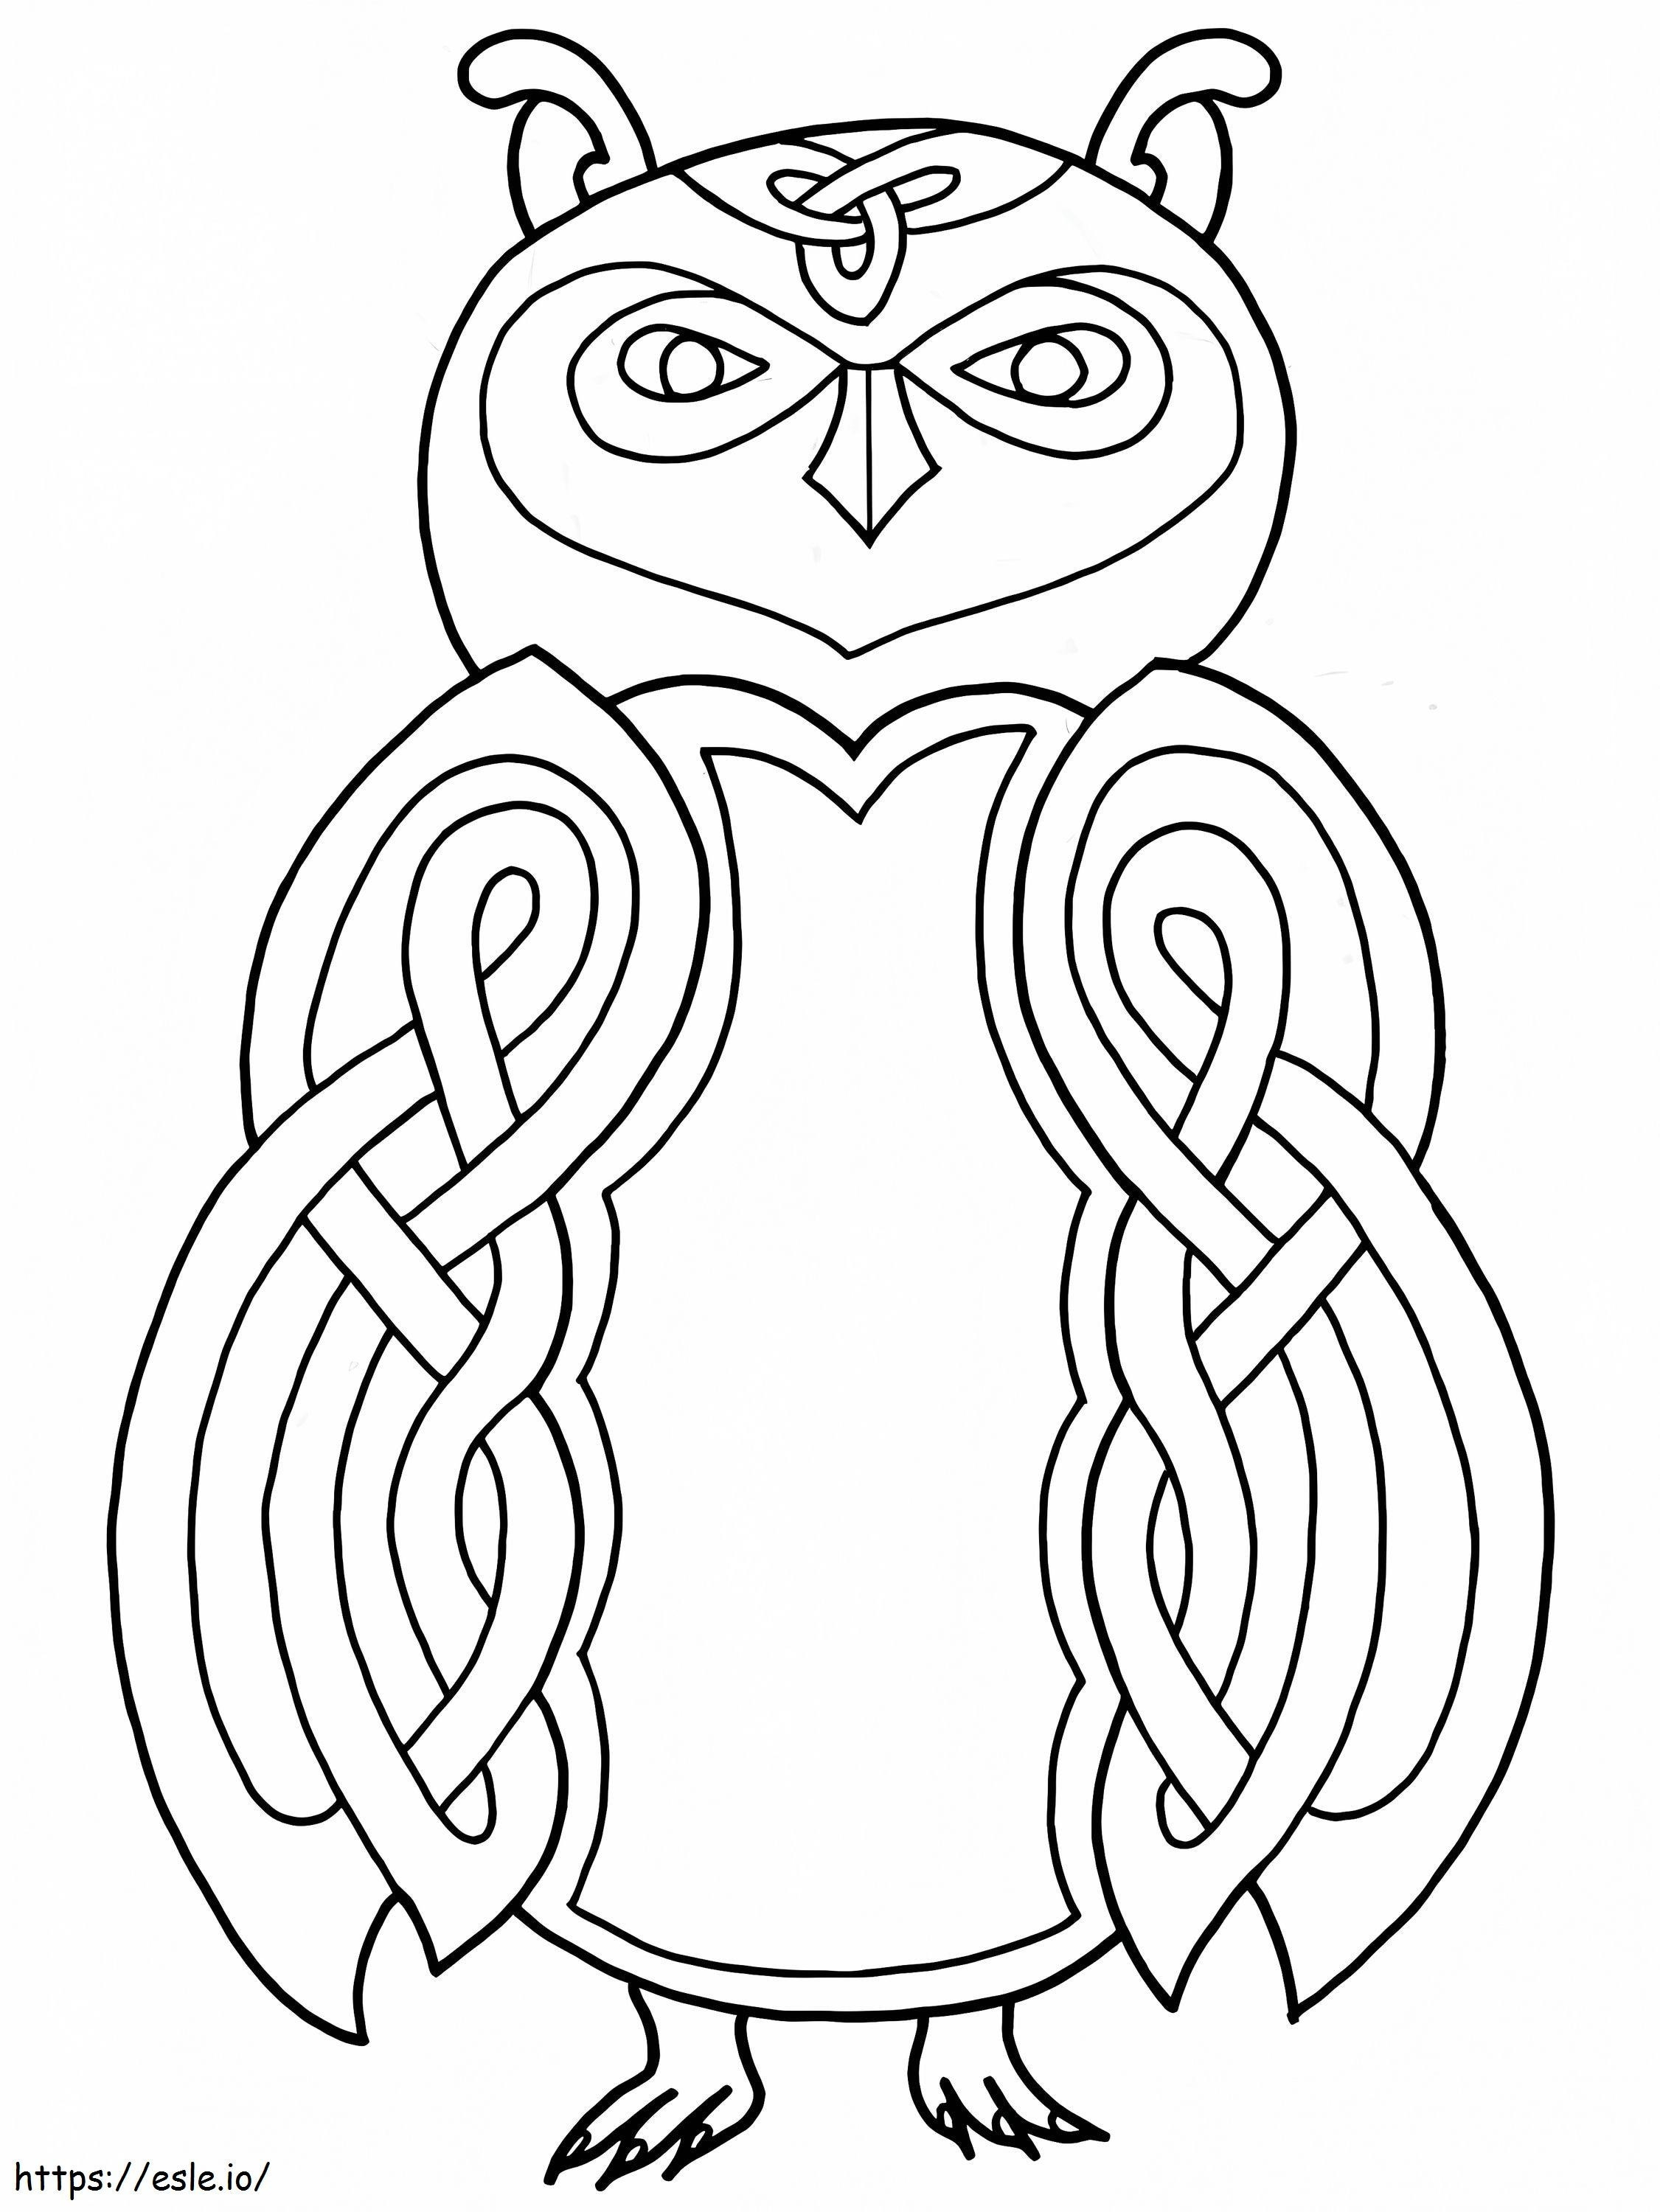 Keltisches Eulen-Design ausmalbilder